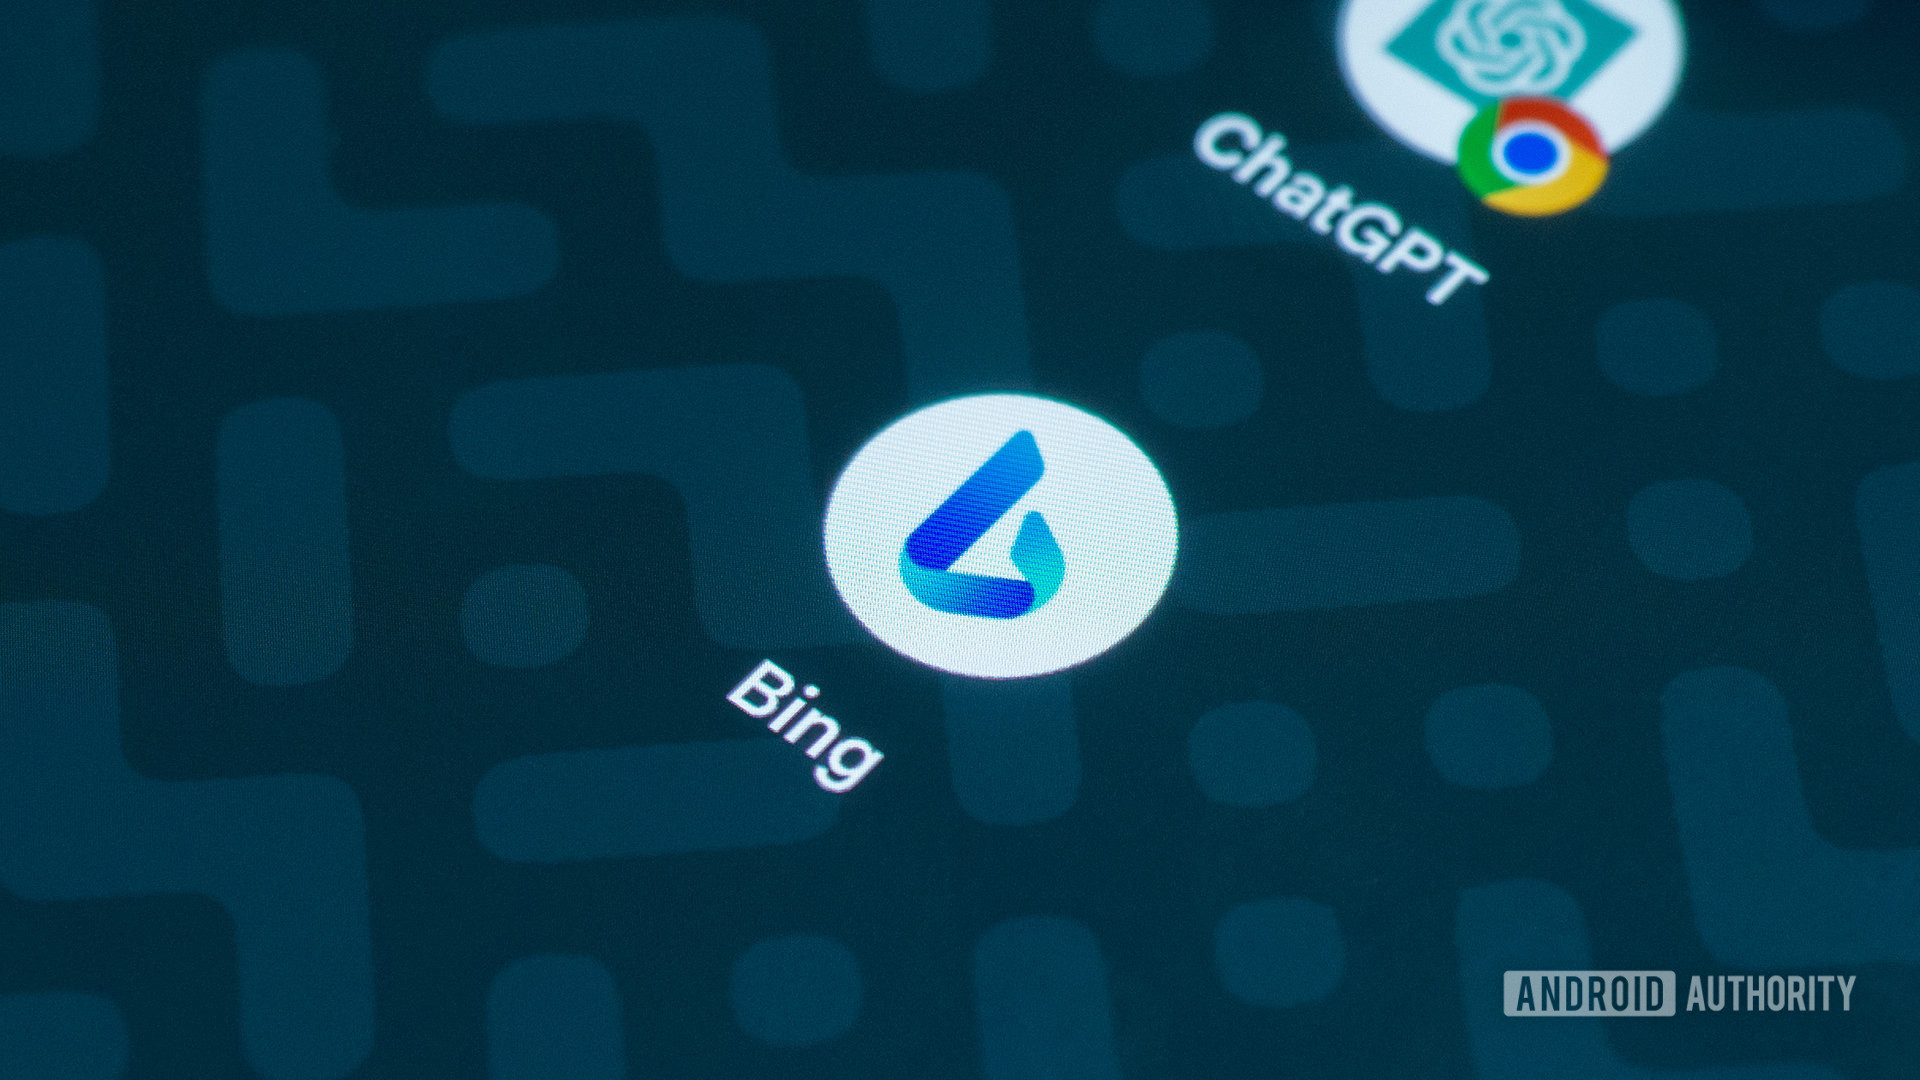 Iconos de Bing y ChatGPT en una pantalla de inicio